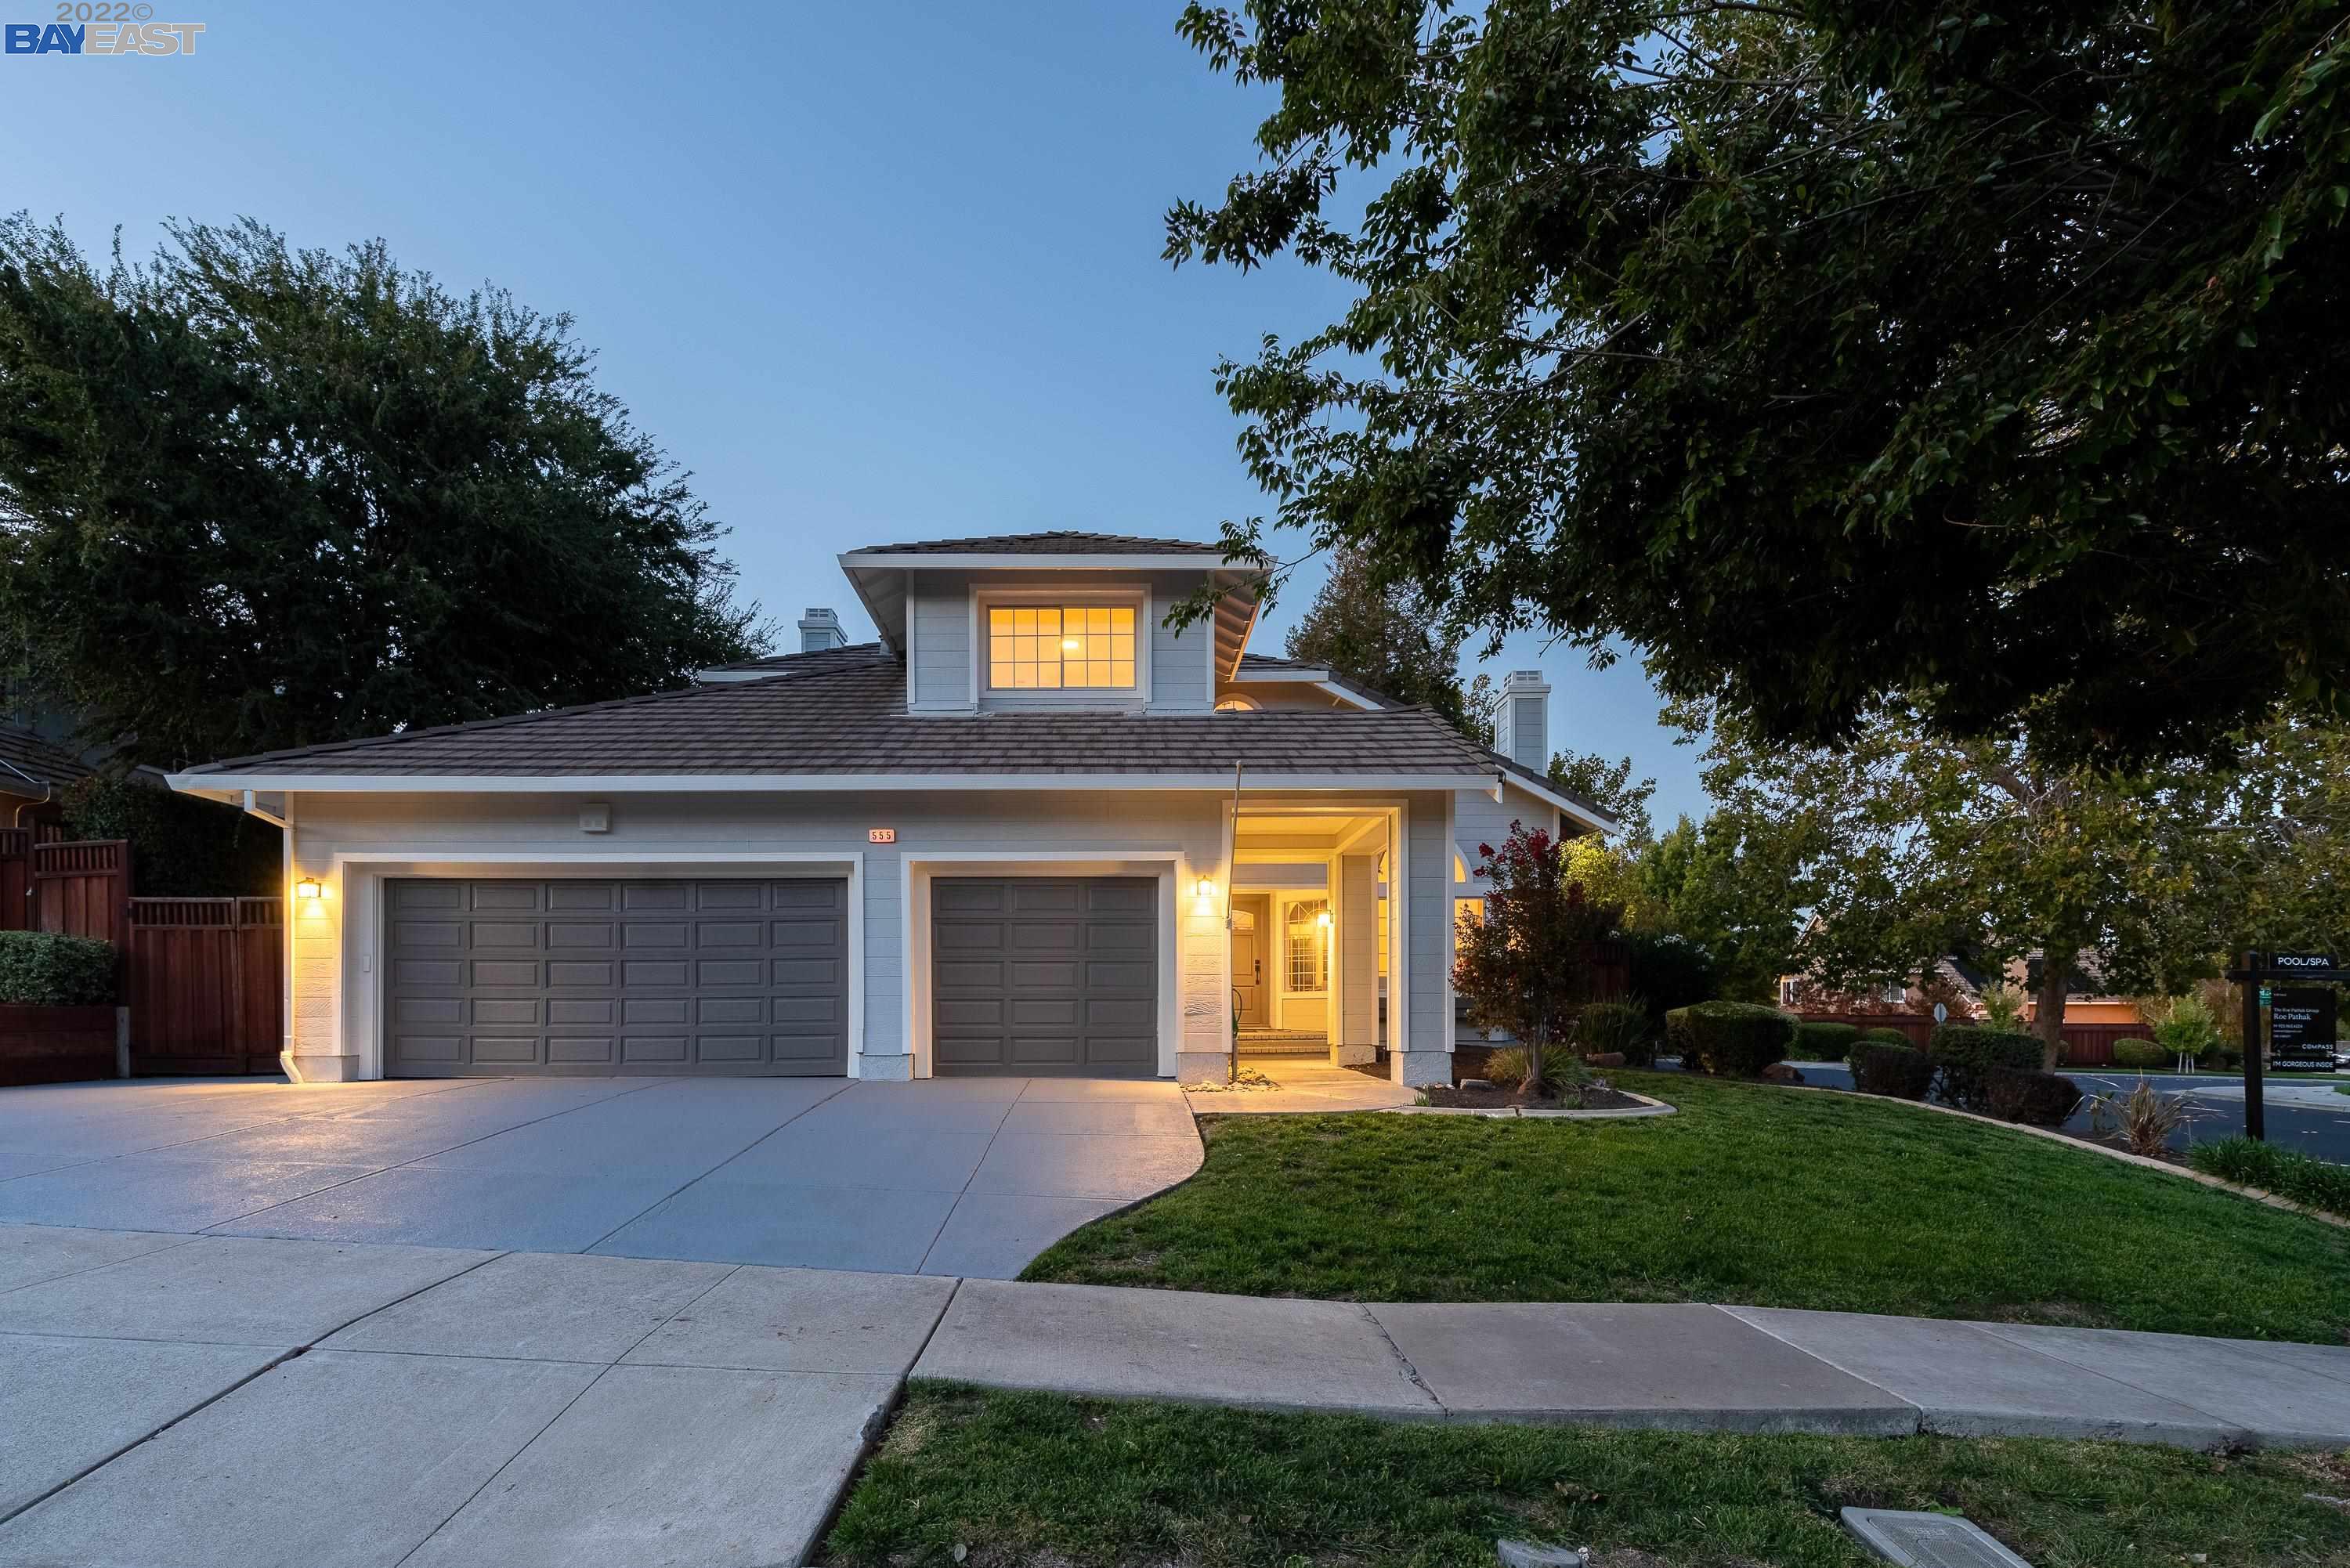 Tìm kiếm một ngôi nhà hoàn hảo tại Livermore, California luôn là điều mà mọi người ao ước. Với nhiều lựa chọn nhà đất, căn hộ và biệt thự, thành phố này là nơi lý tưởng để quyết định mua nhà. Hãy xem qua hình ảnh để thấy những ngôi nhà tuyệt đẹp ngay trên tuyến đường phố tuyệt đẹp của Livermore. 